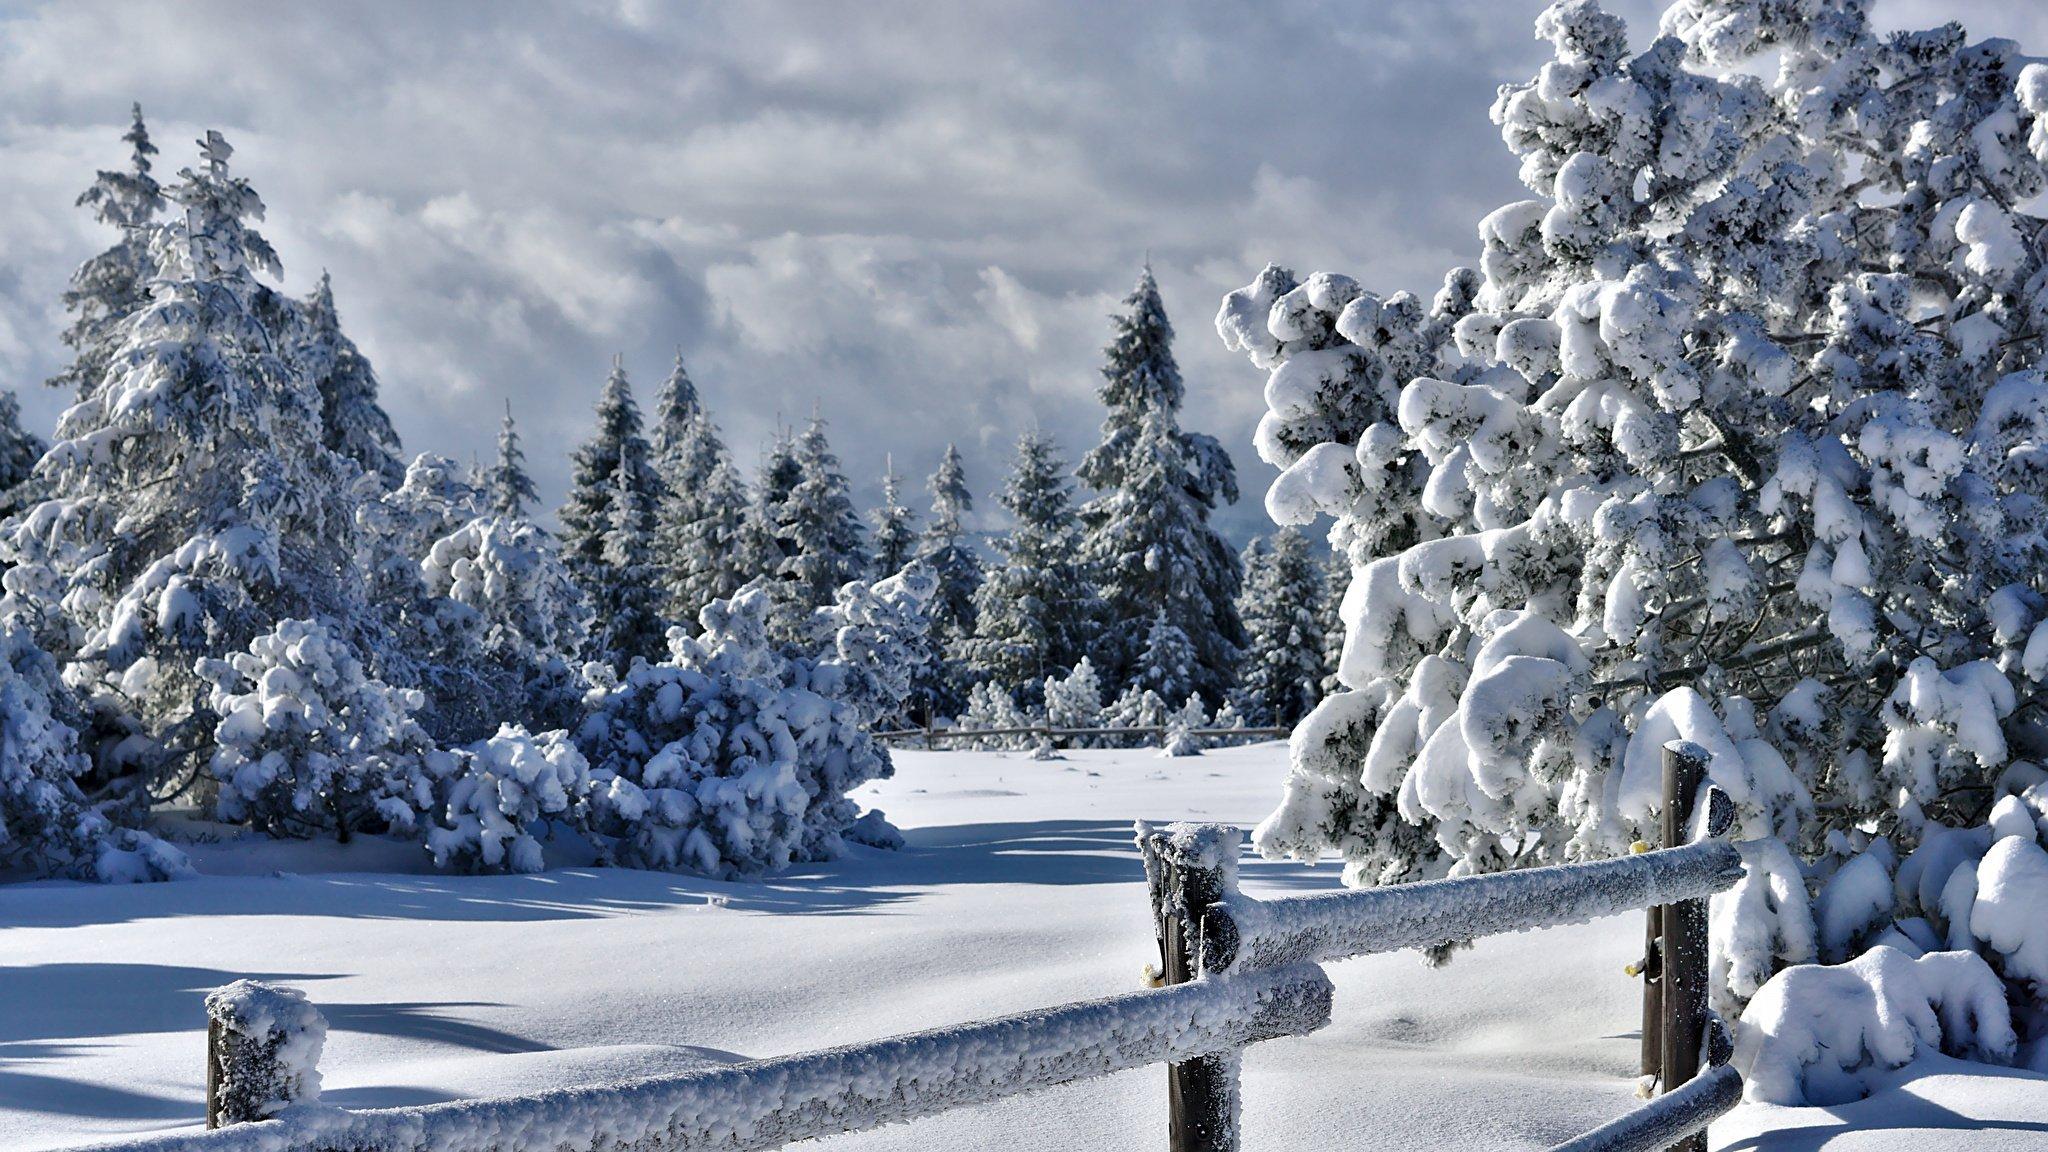 Самые красивые картинки зимы. Зима в самых красивых картинках - YouTube